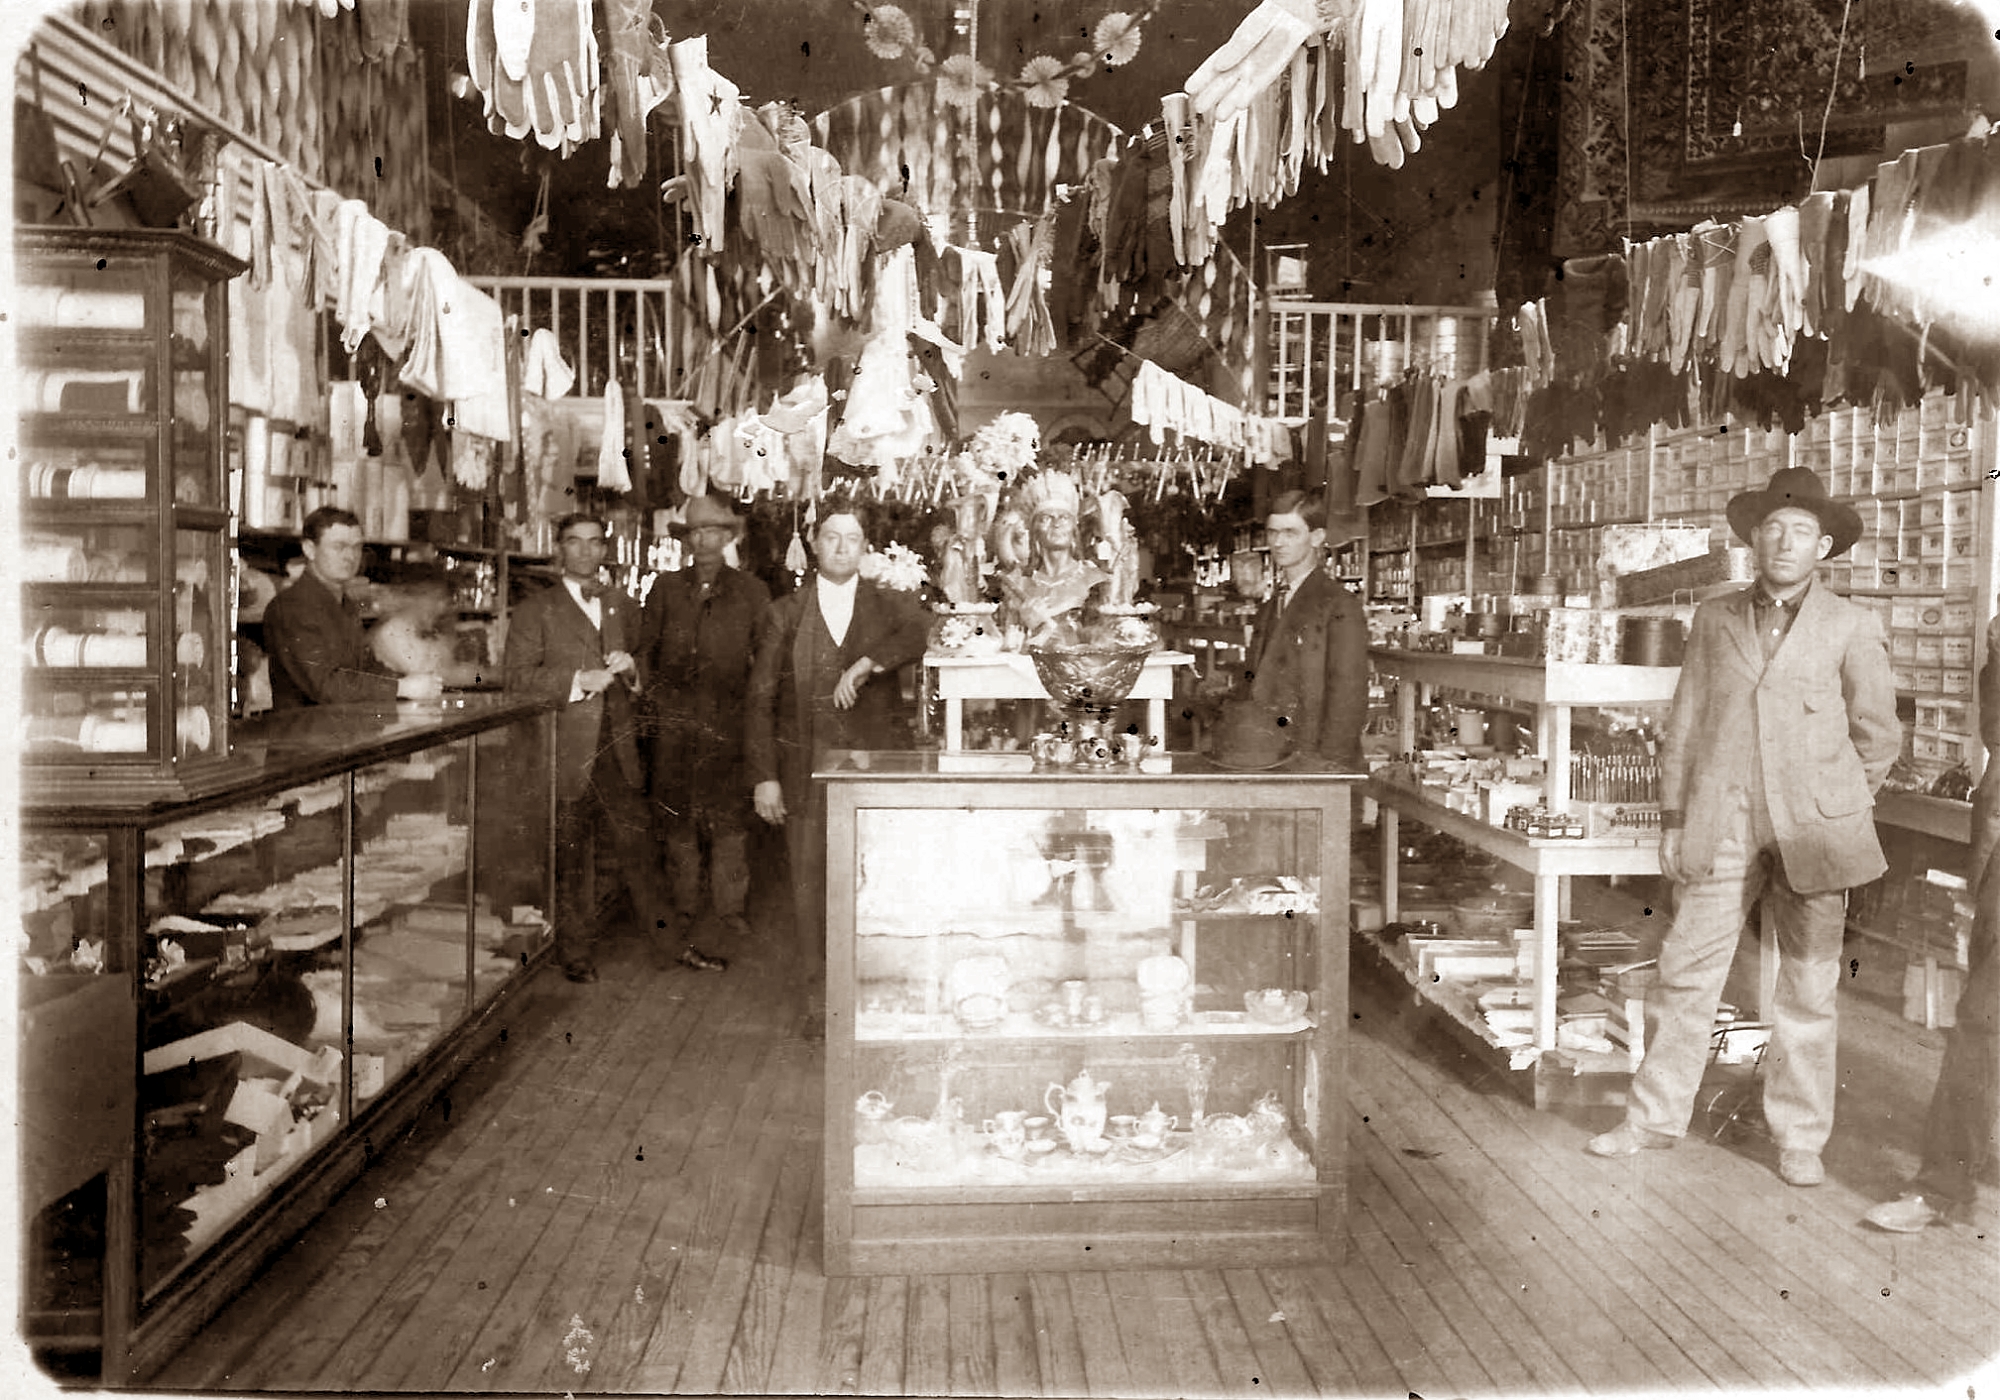 Joe E. Woodard's Store in Childress in 1925